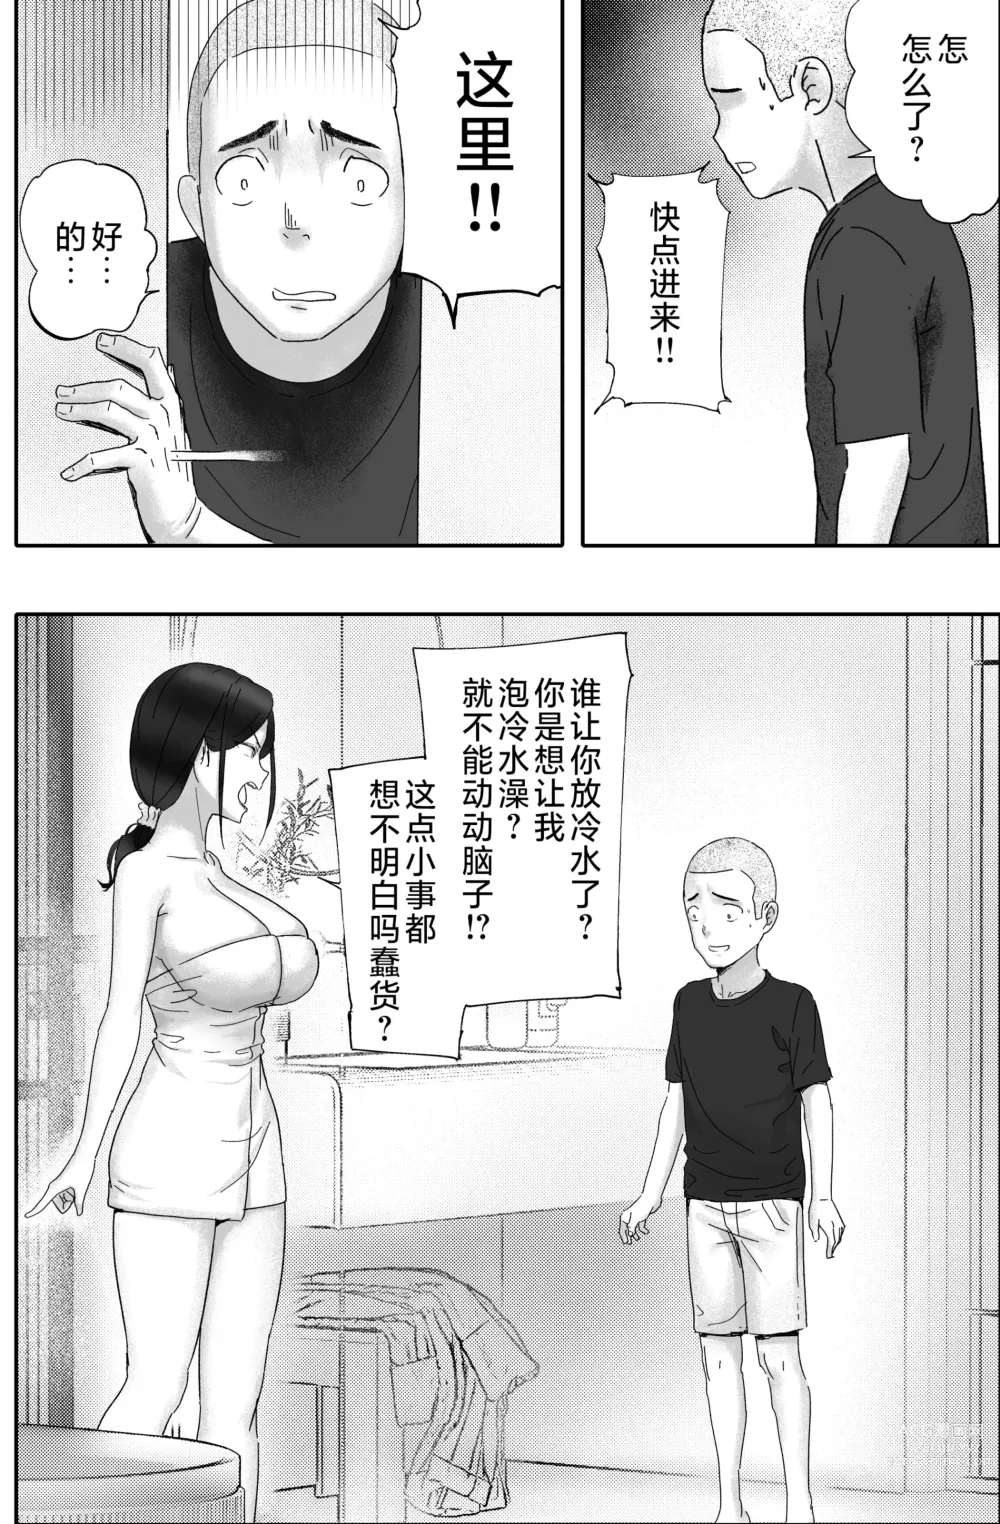 Page 6 of doujinshi Kane ni Me ga Kurami Shiyoku ni Oboreta Onna no Saigo